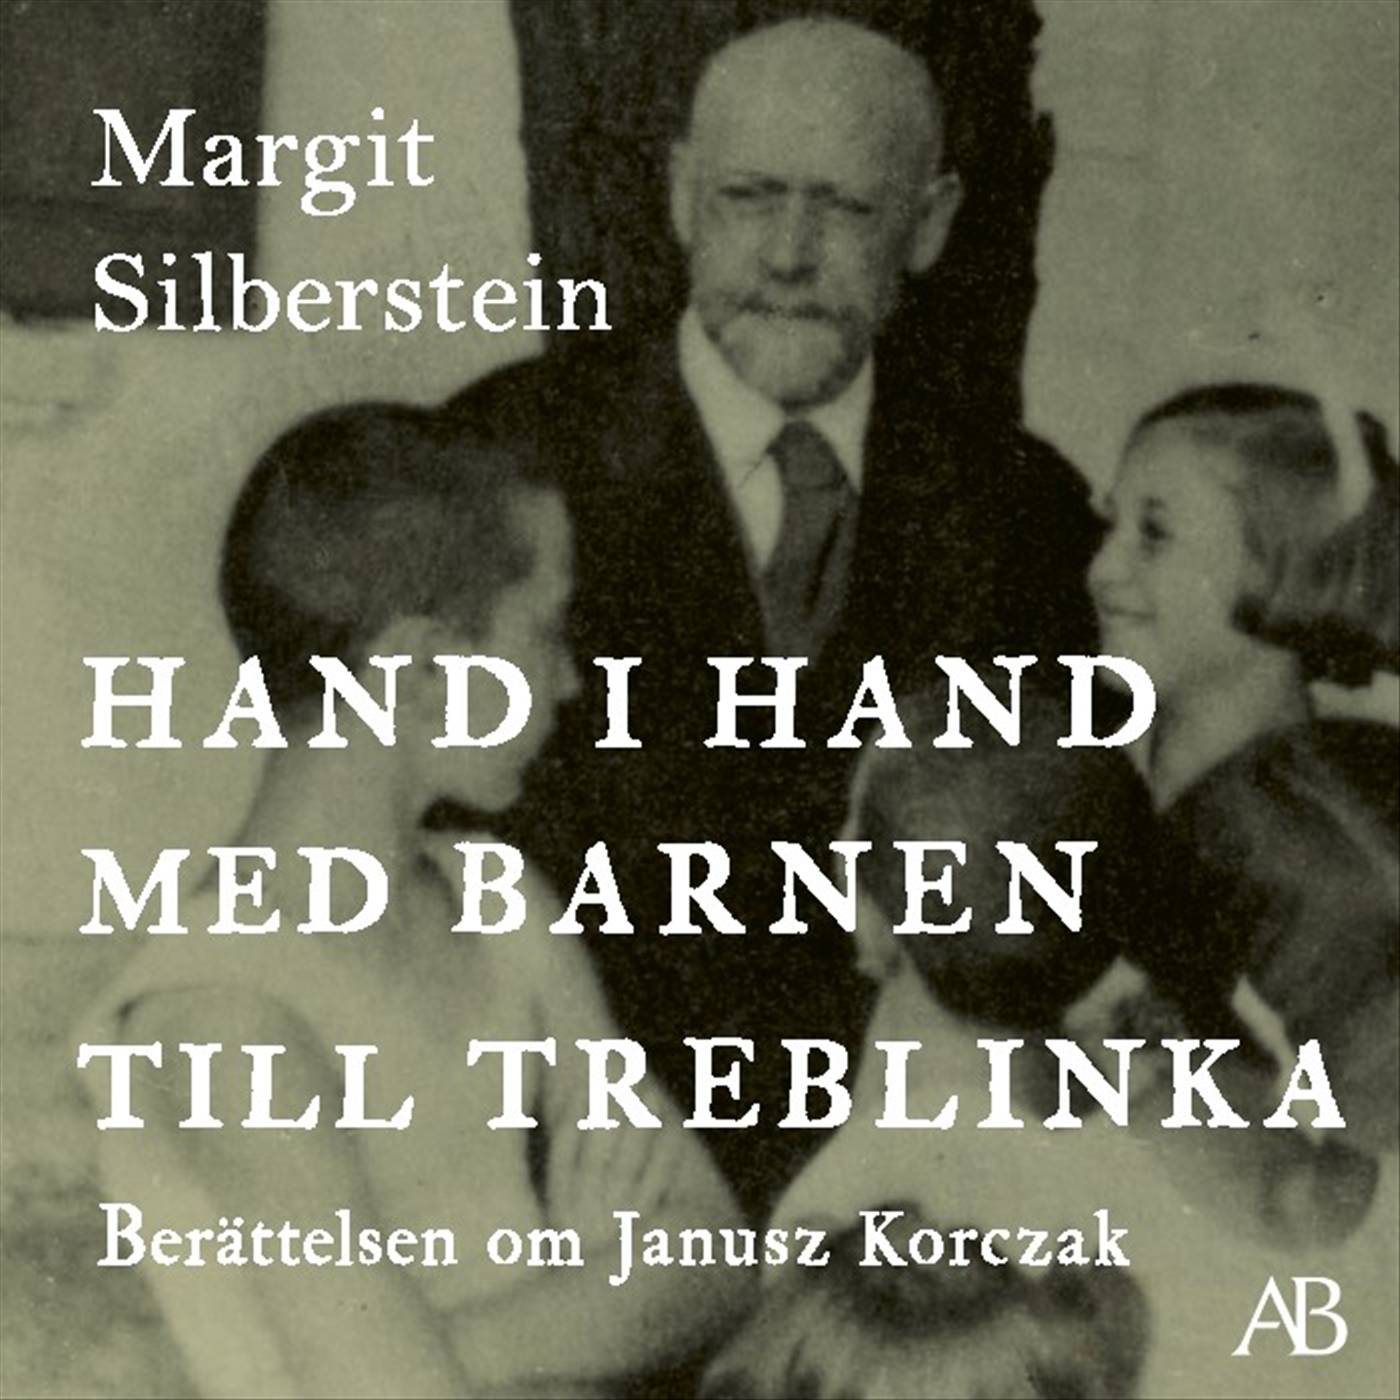 Hand i hand med barnen till Treblinka : berättelsen om Janusz Korczak